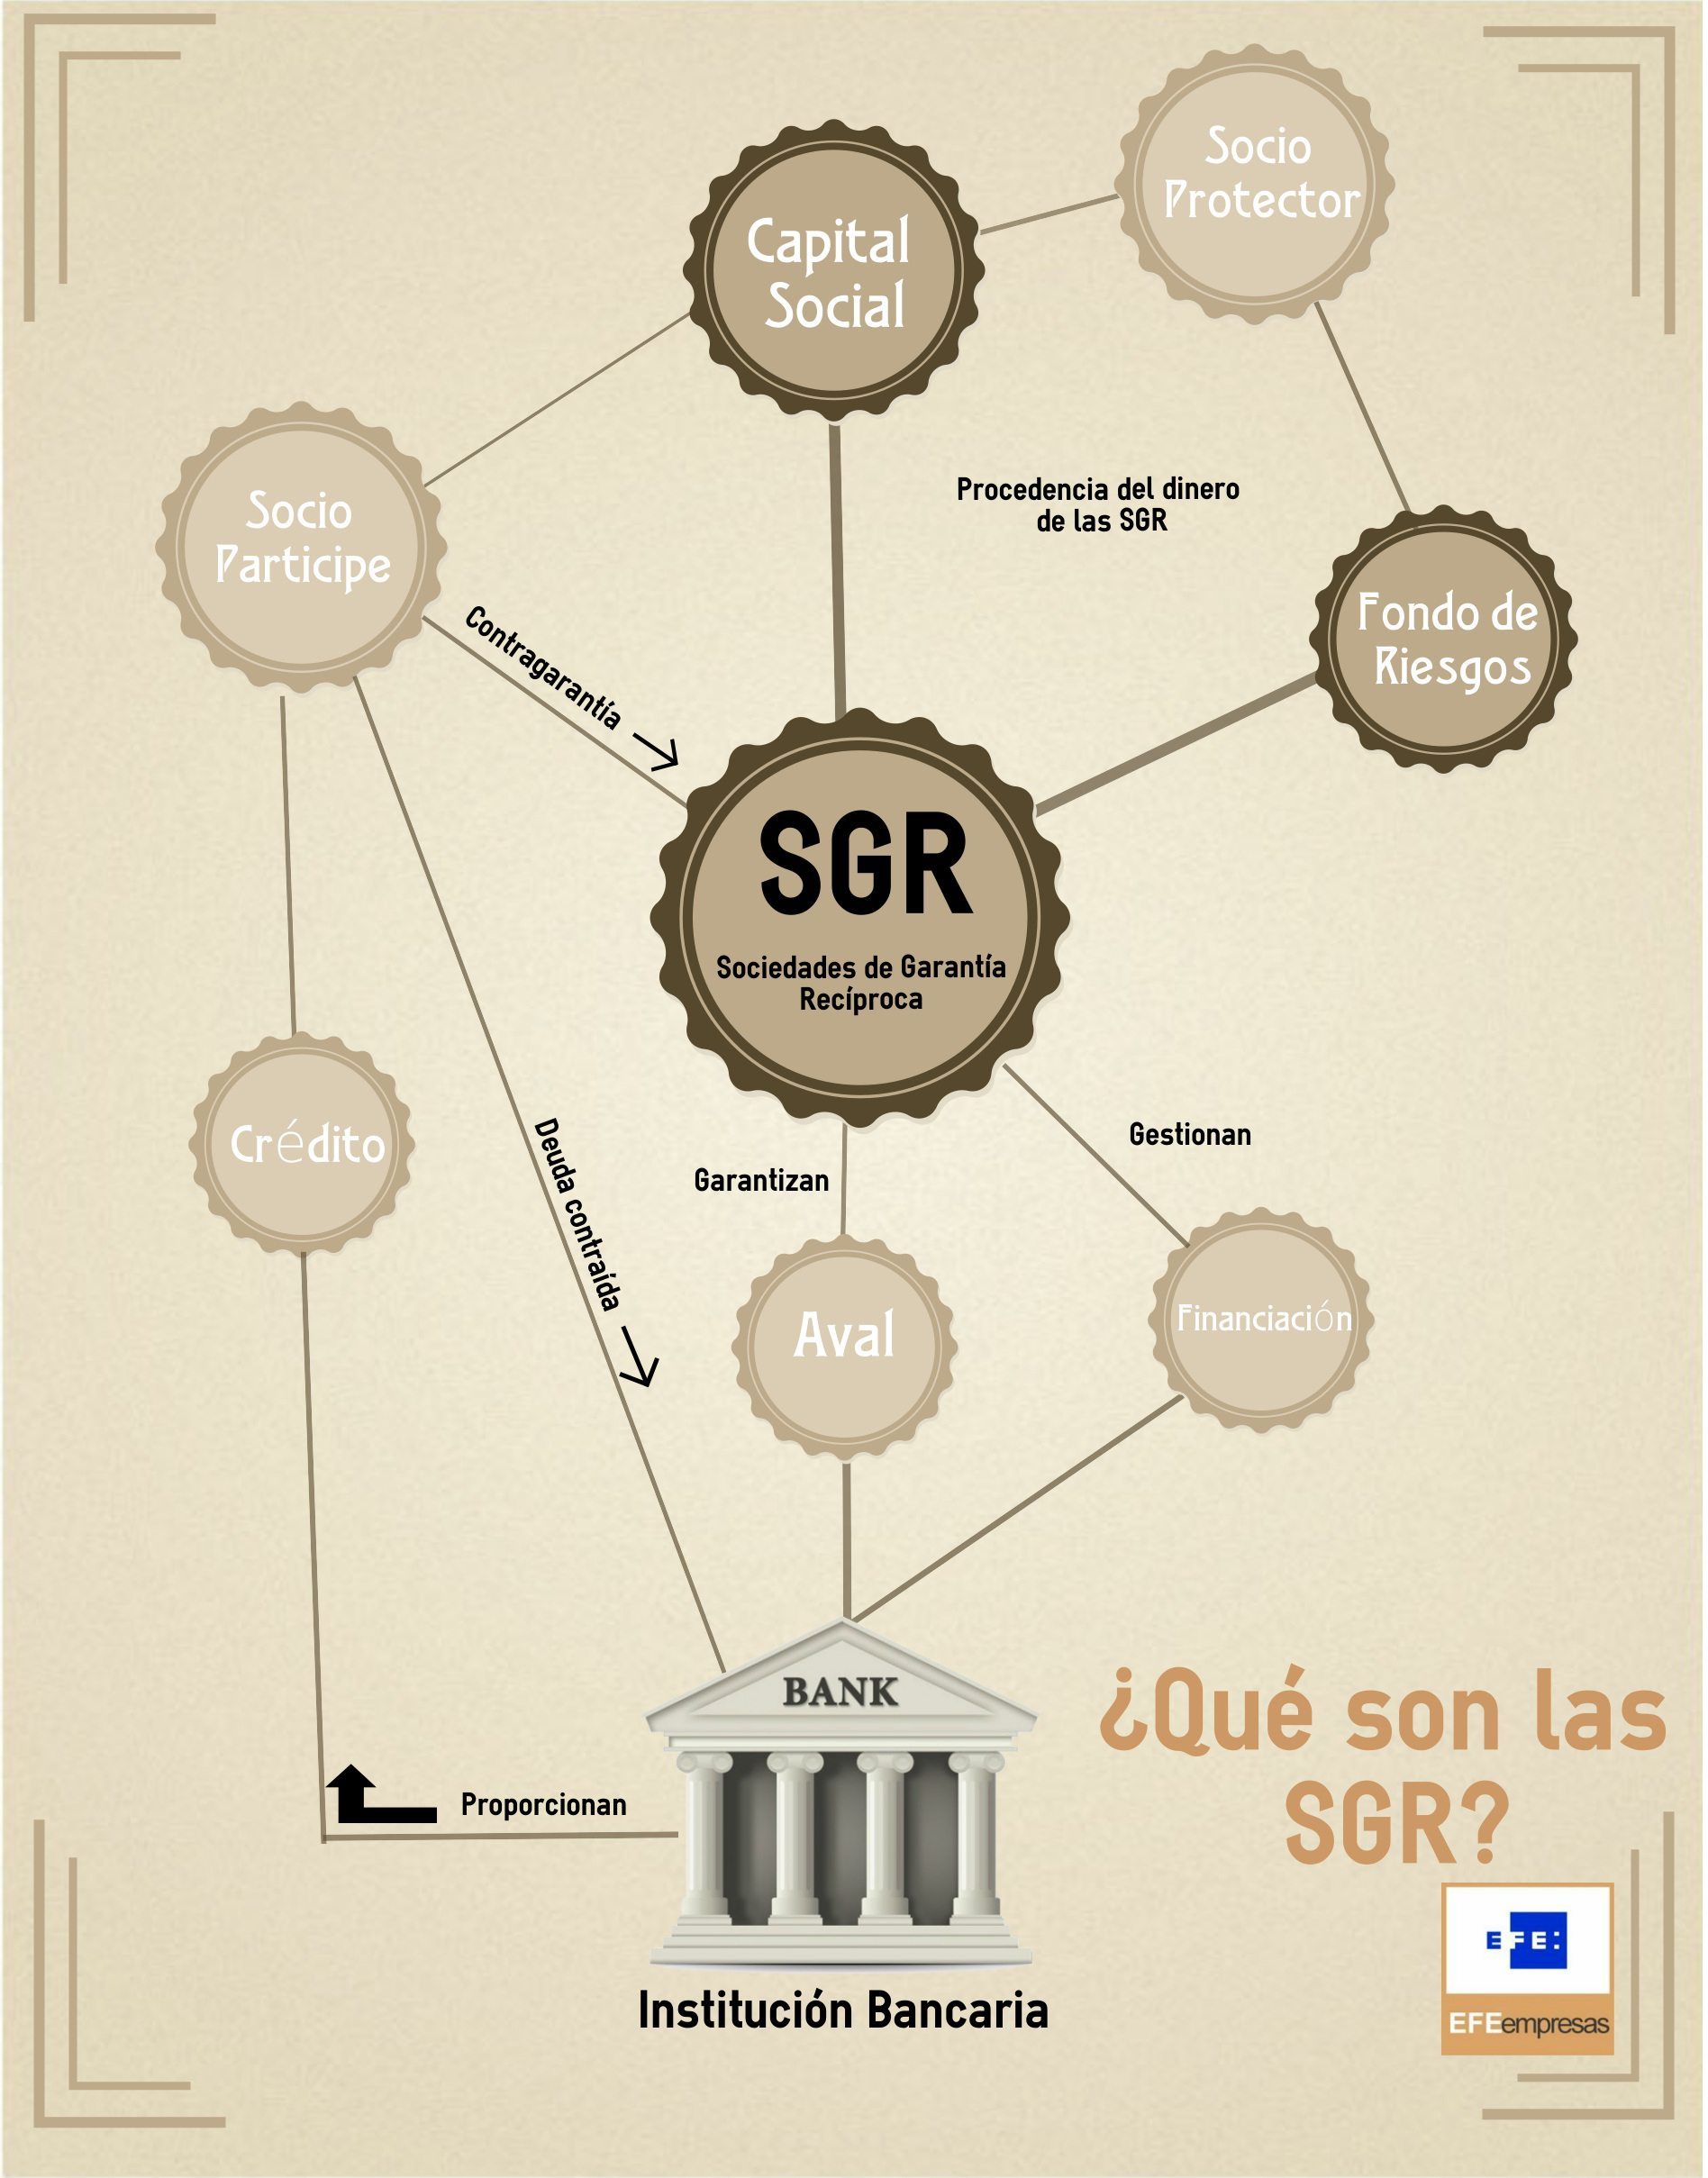 Qu son las SGR